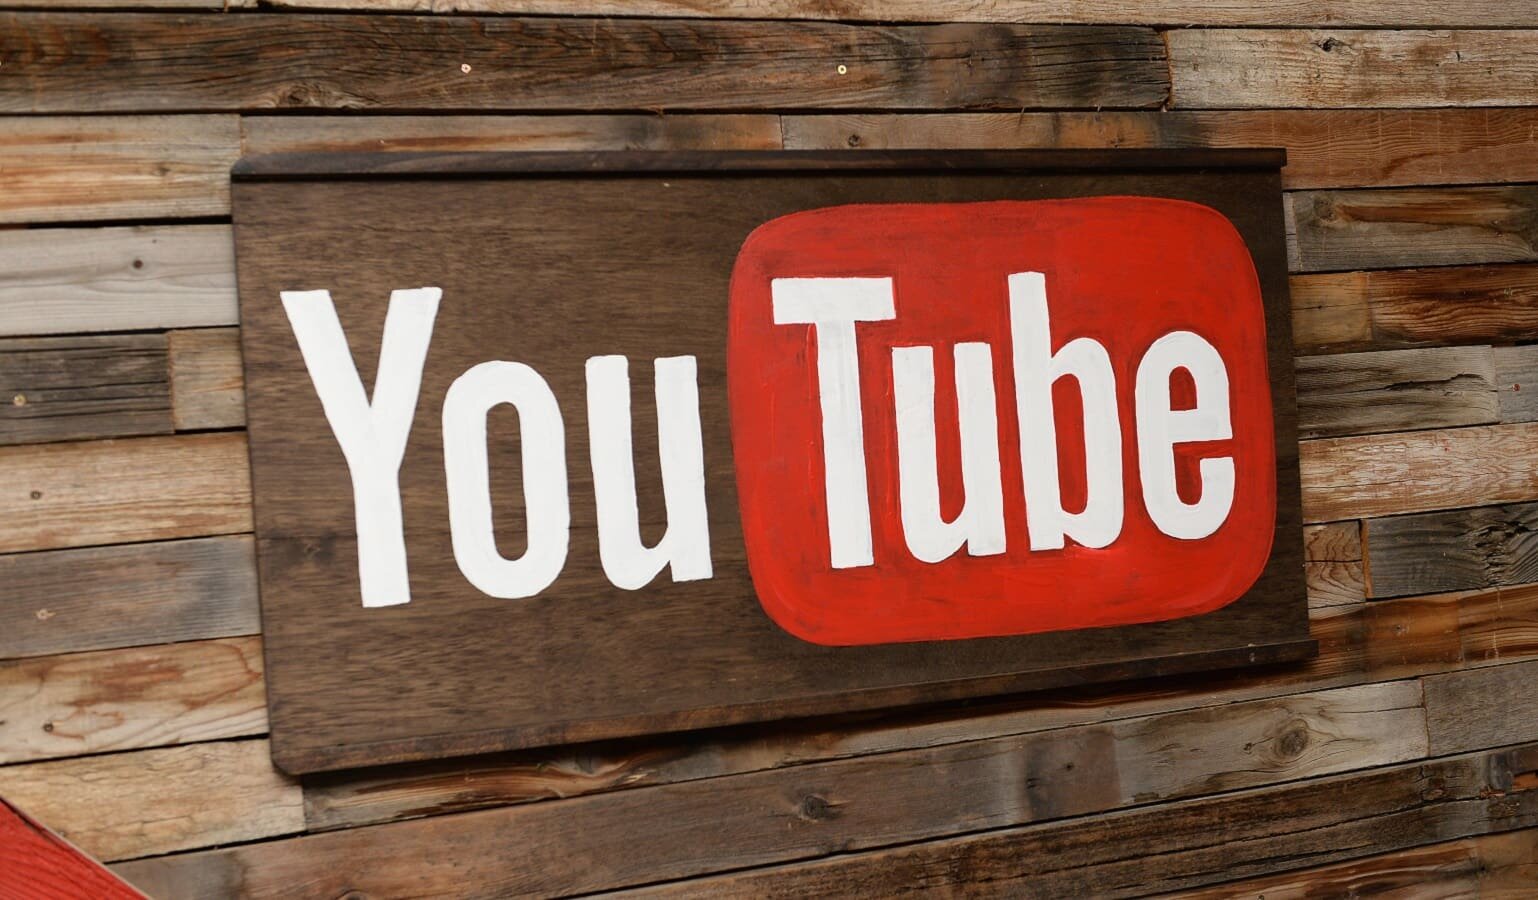 Το YouTube ακυρώνει δύο σειρές, αλλά αρνείται ότι απομακρύνεται από το πρωτότυπο περιεχόμενο